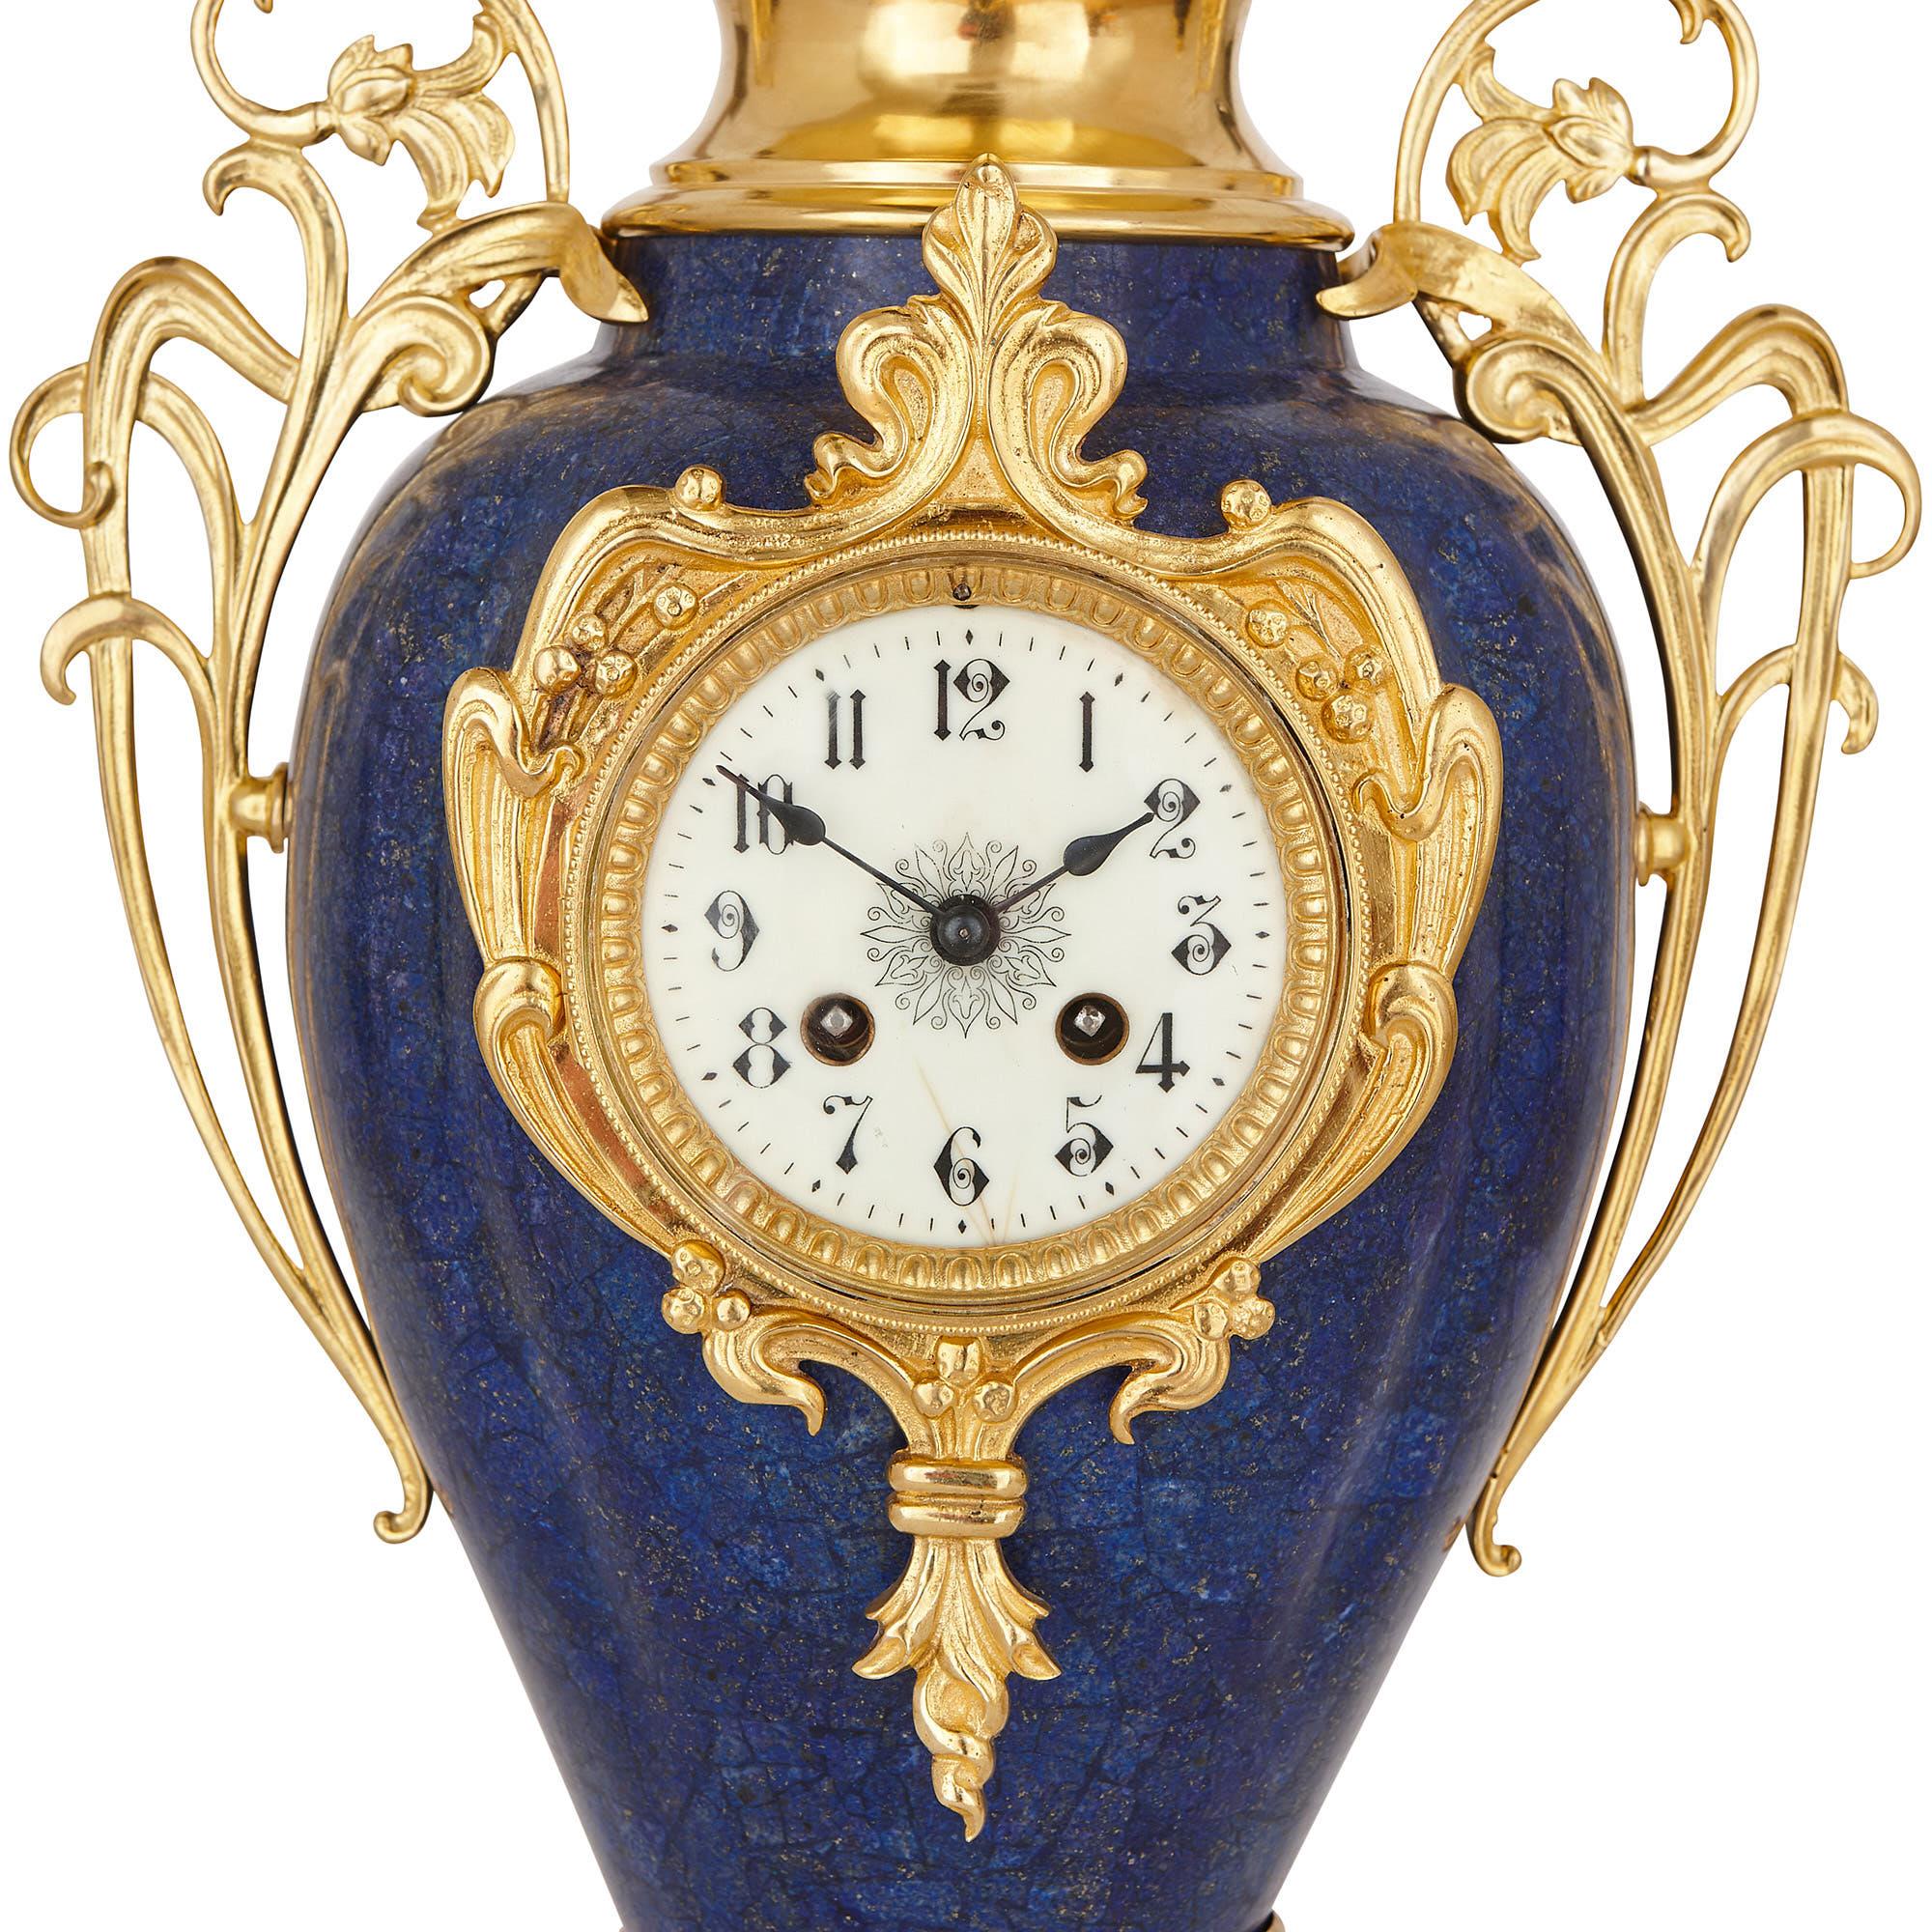 Dieses Uhrenset ist im Jugendstil gestaltet, der zu Beginn des 20. Jahrhunderts in Frankreich sehr beliebt war. Das Set besteht aus einer hohen zentralen Uhr und zwei etwas kleineren flankierenden Vasen. Die Gegenstände wurden aus vergoldeter Bronze